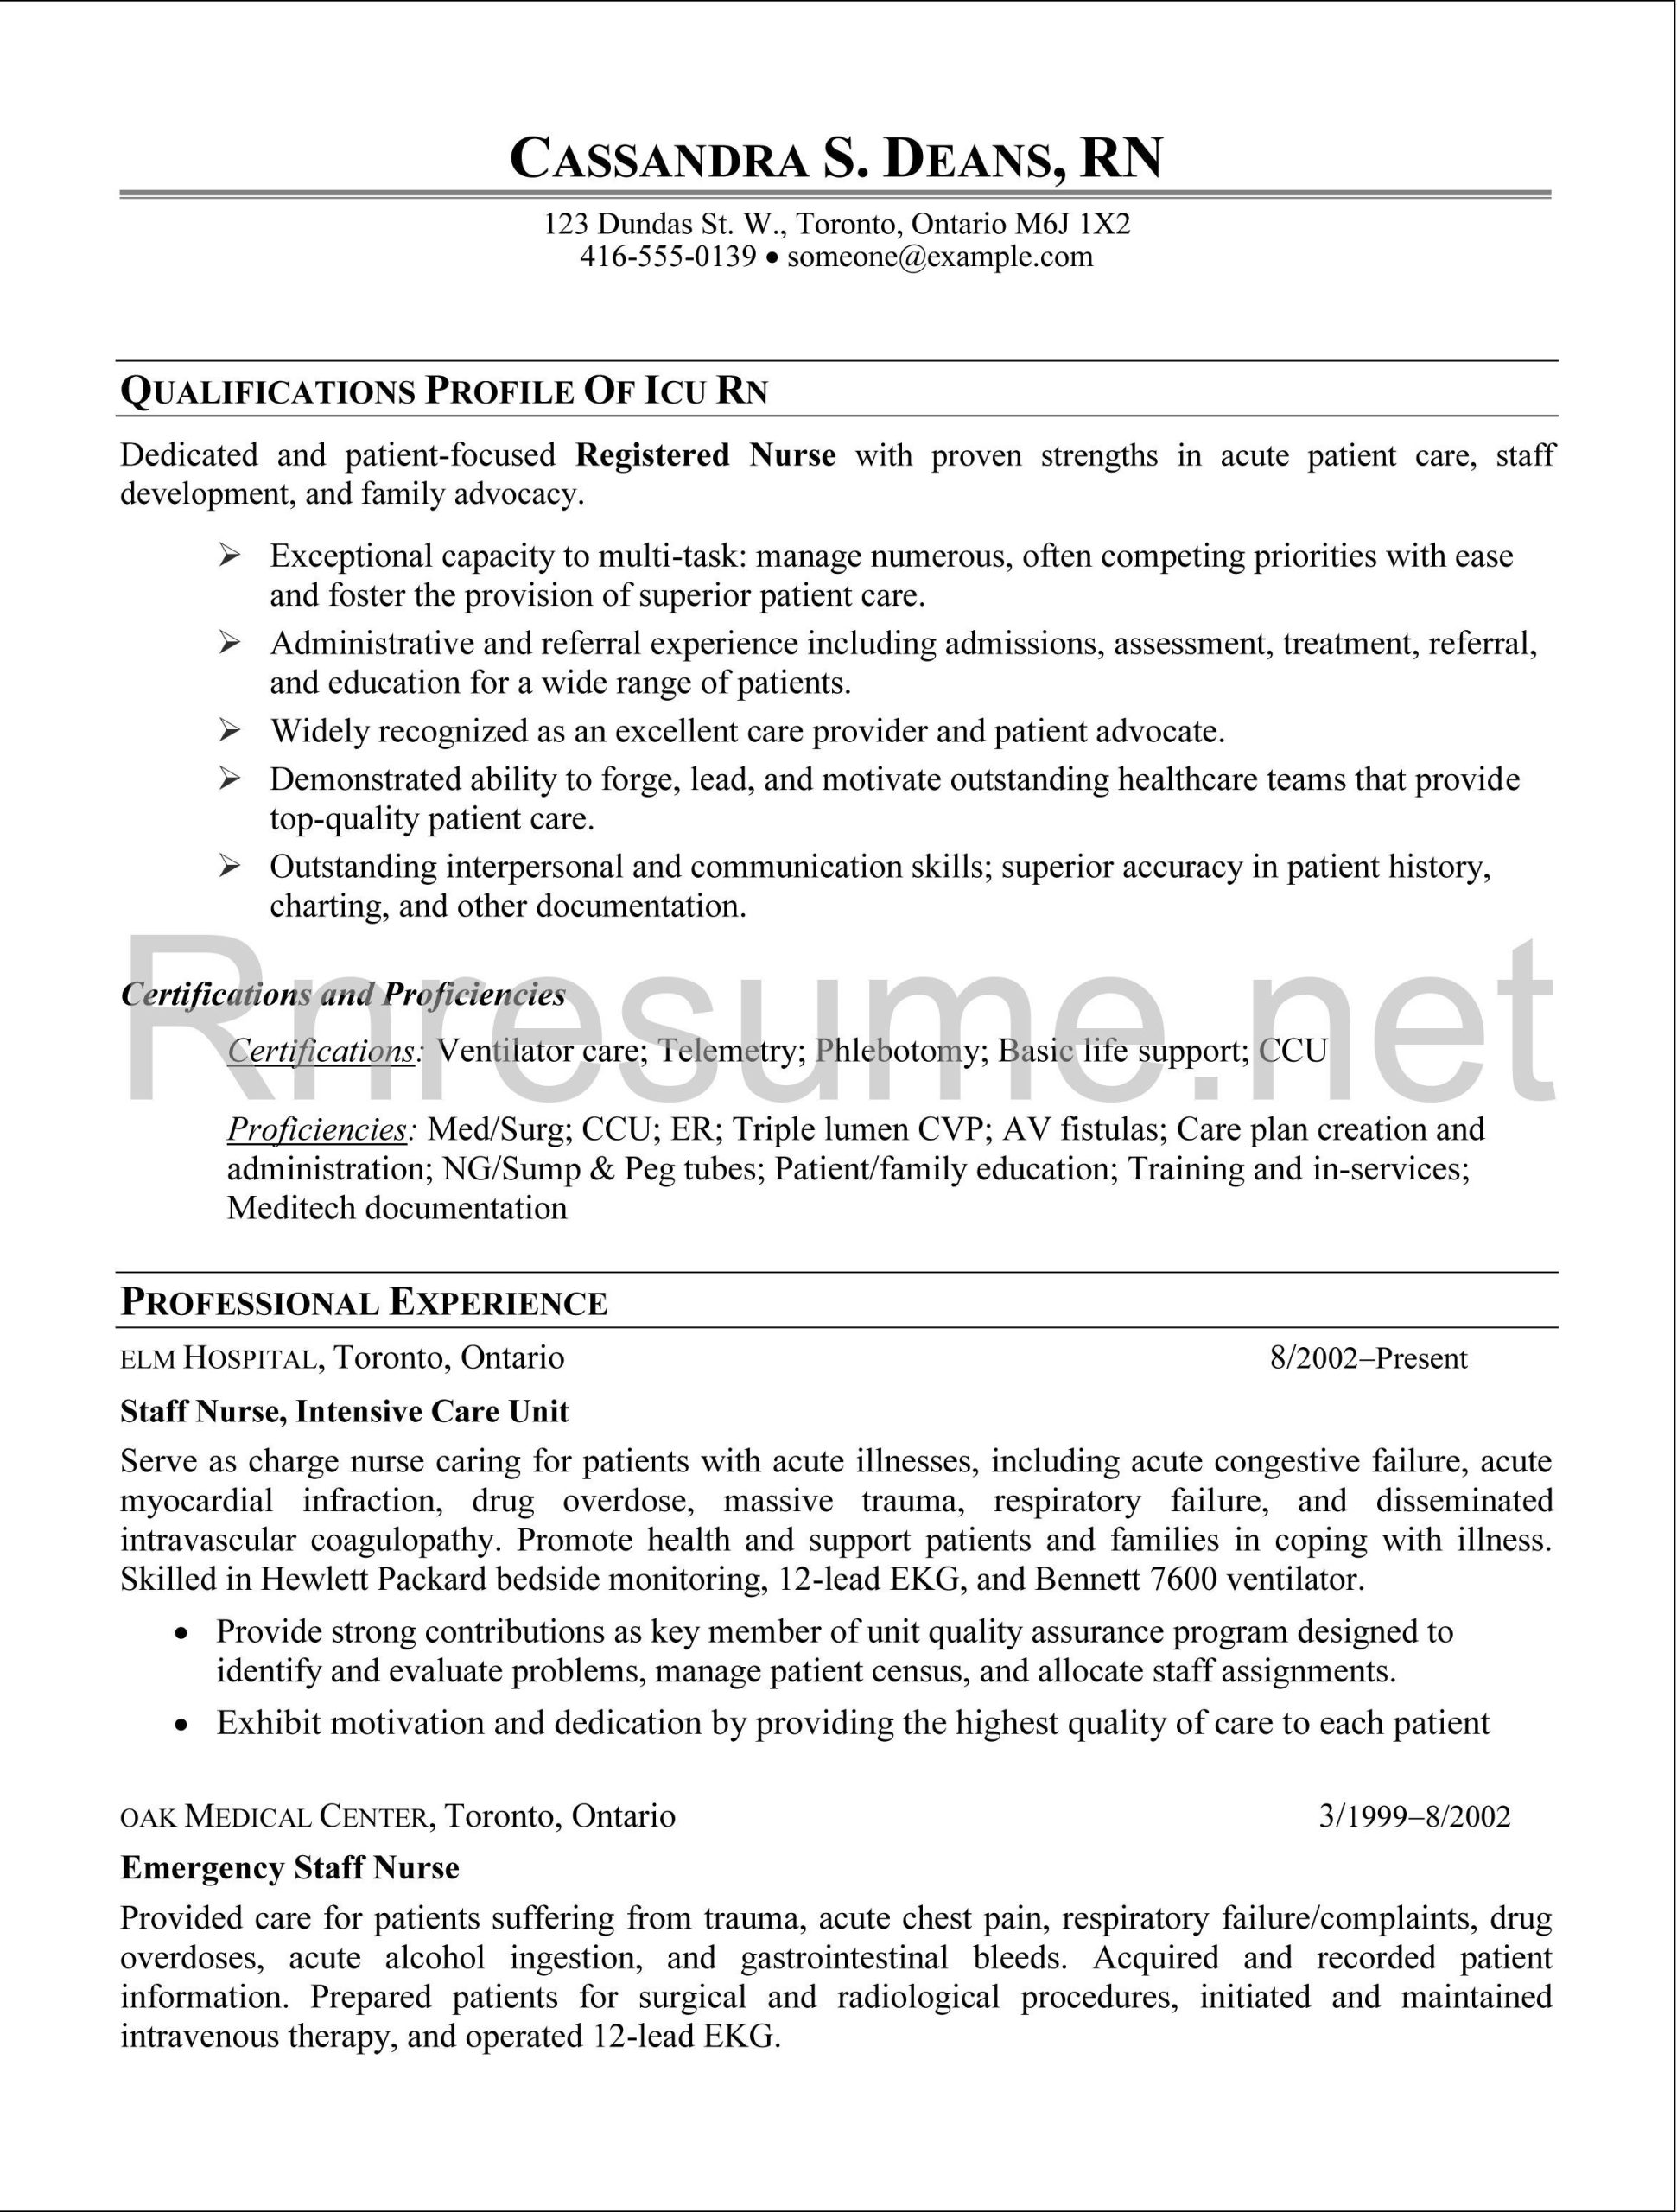 Sample Of Resume Objectives for Rns Icu Rn Resume Sample Http://www.rnresume.net/check-our-rn-resume …